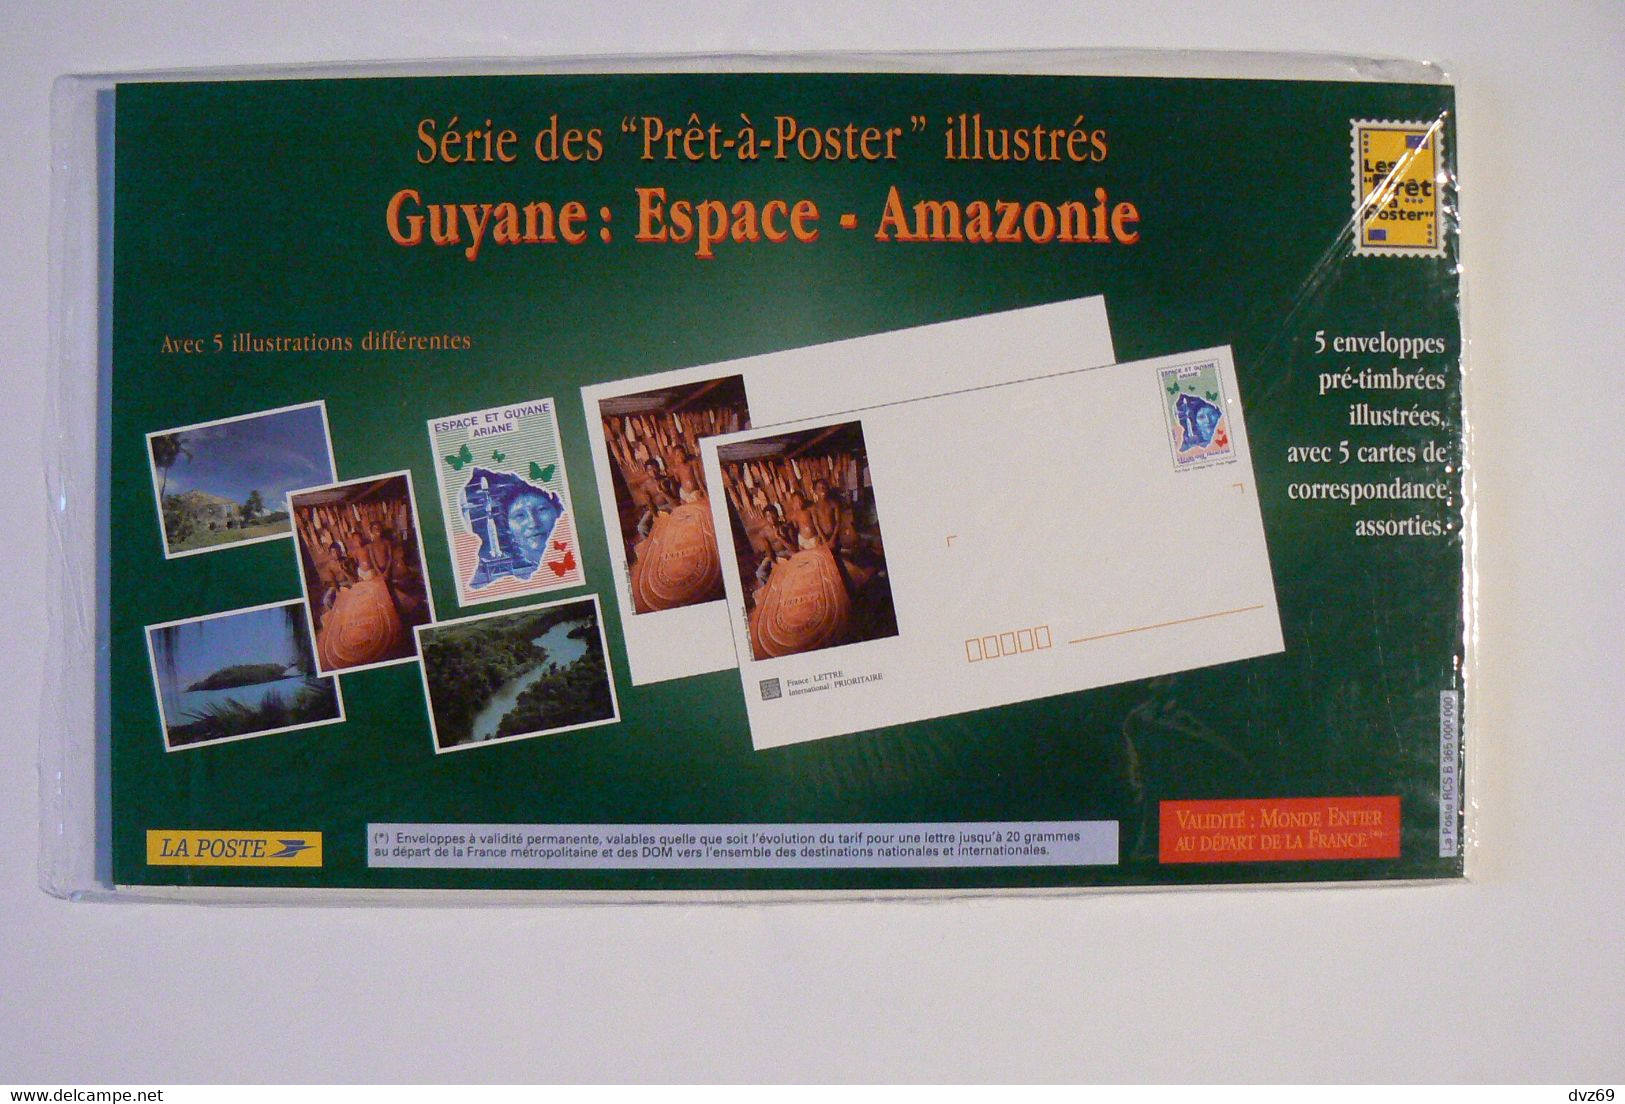 Guyane Espace Amazonie, 5 Enveloppes Pré-timbrées Illustrées + Cartes Assorties, Encore Sous Blister Ouvert, TB. - Konvolute: Ganzsachen & PAP